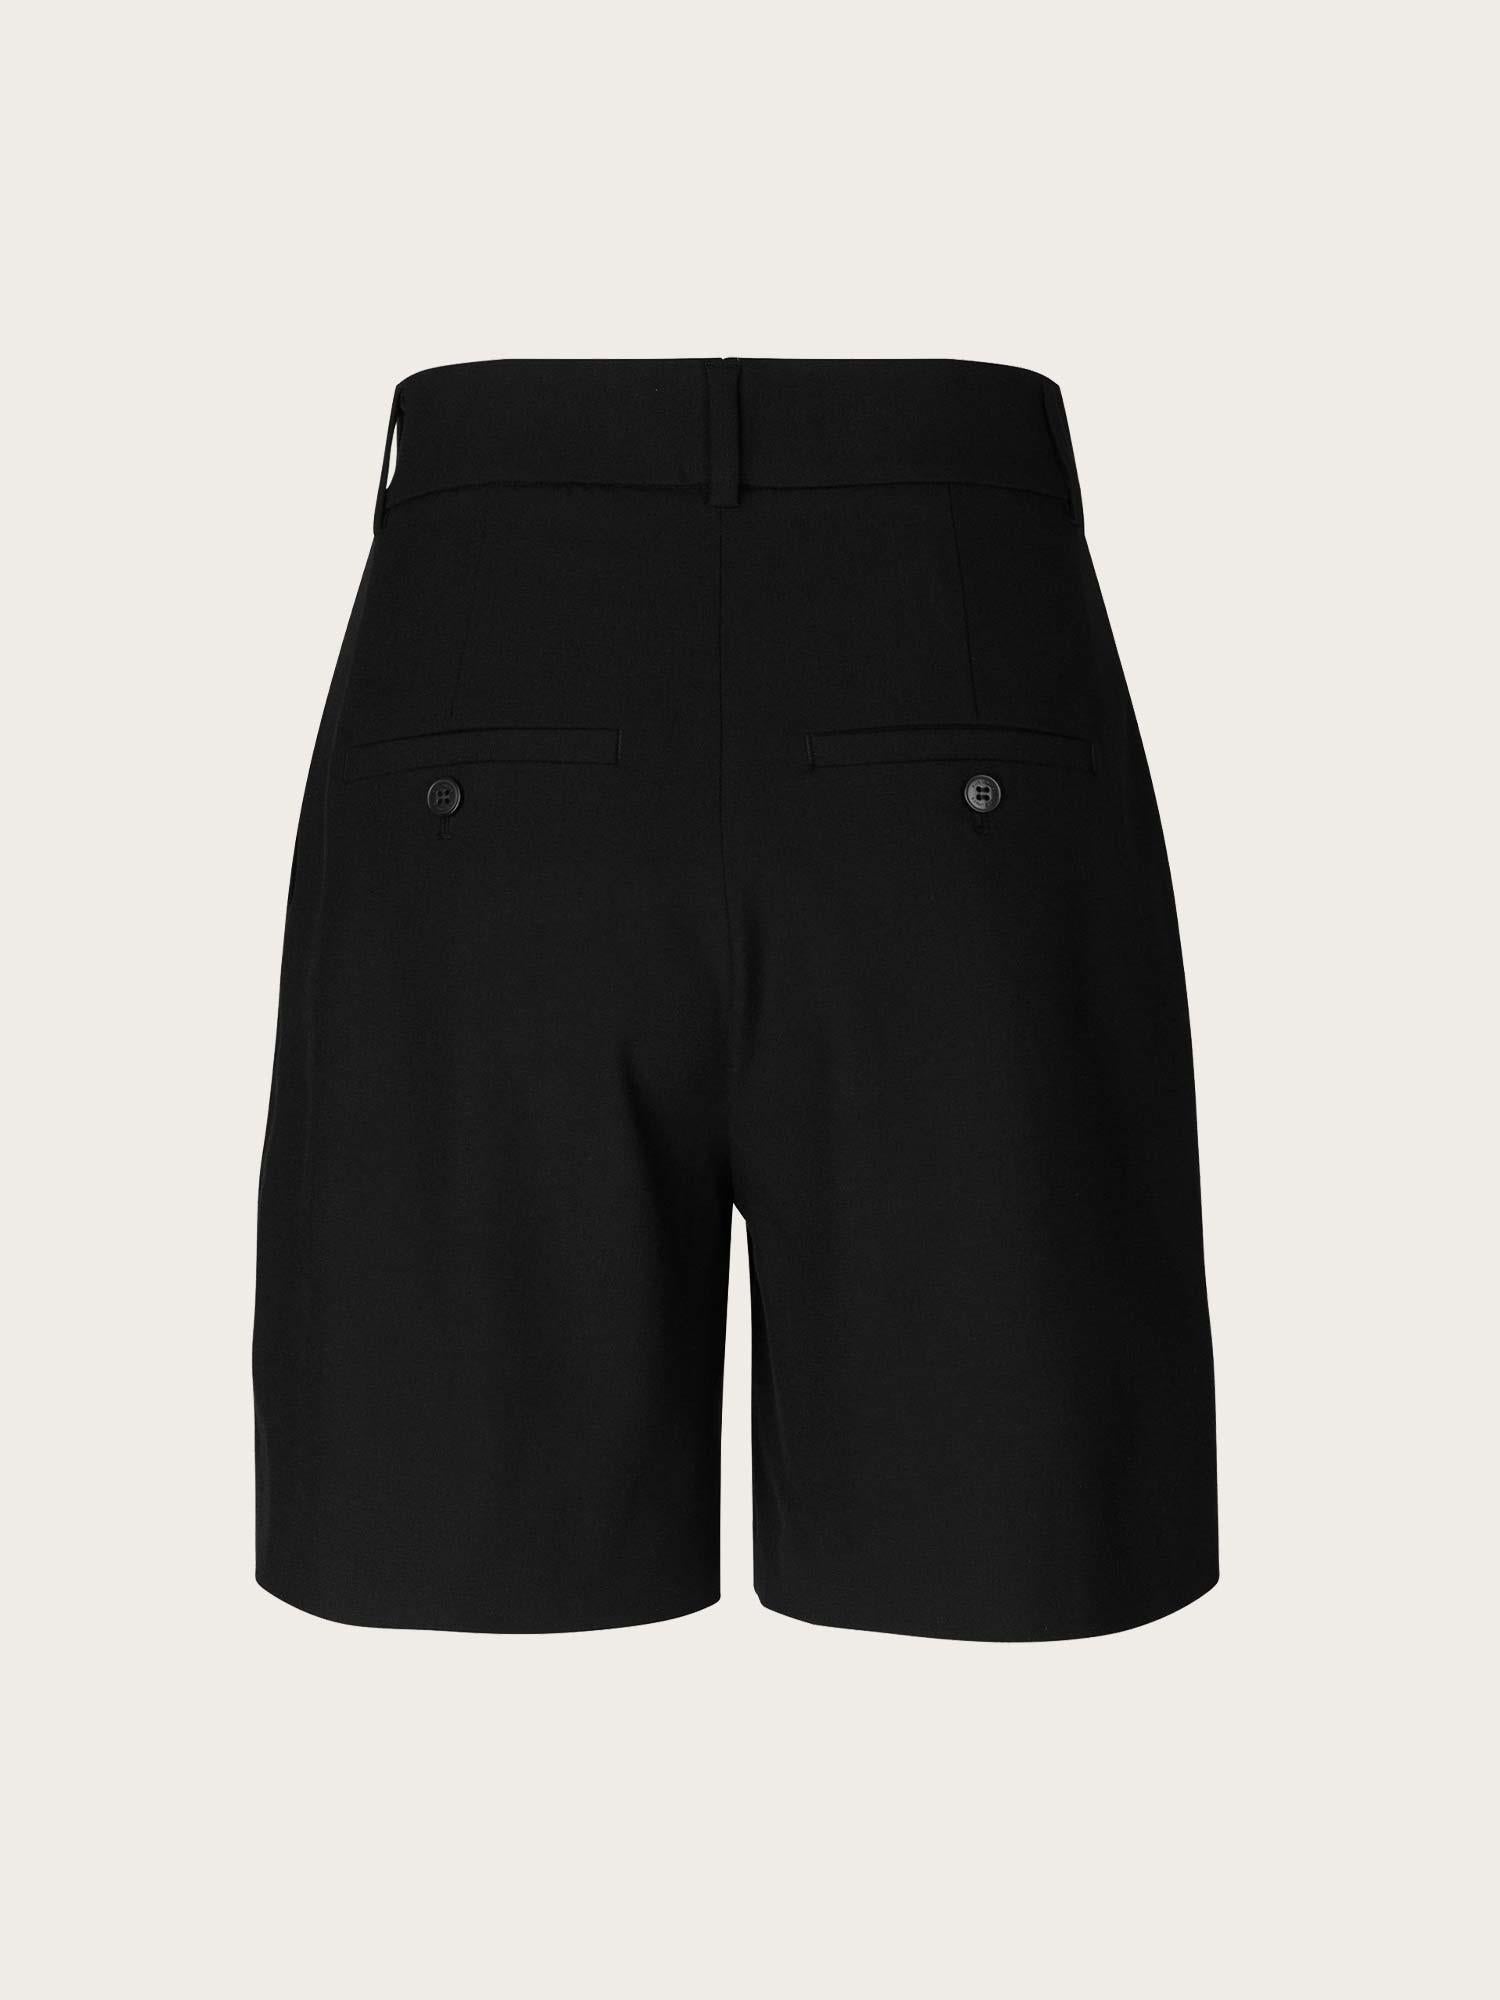 KarenFV Shorts 396 - Black